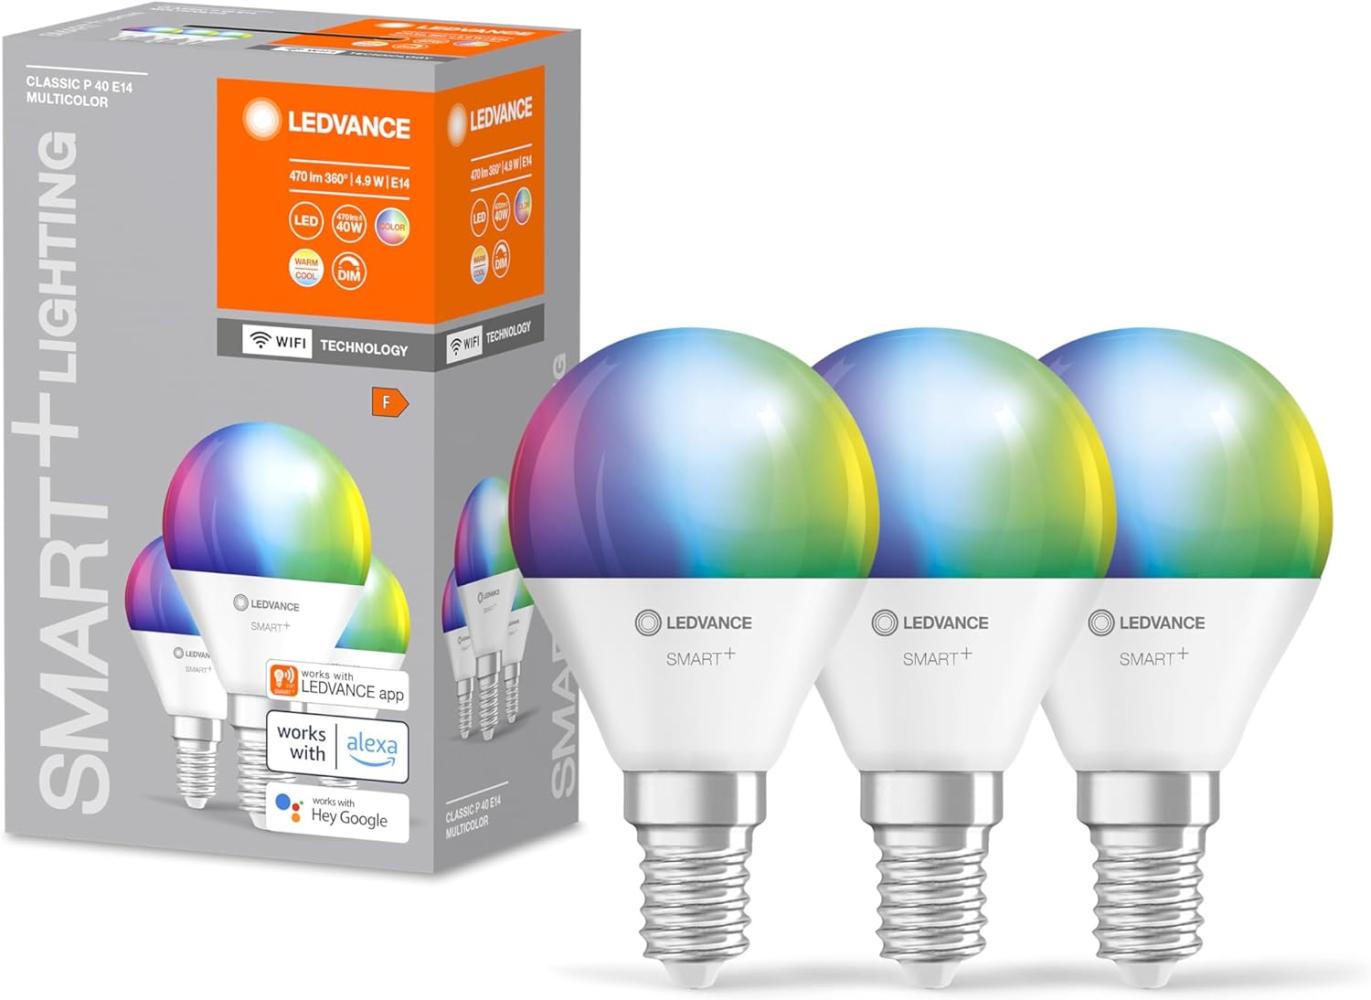 LEDVANCE Smarte LED-Lampe mit WiFi-Technologie für E14-Sockel, matte Optik ,RGBW-Farben änderbar, Lichtfarbe änderbar (2700K-6500K), 470 Lumen, Ersatz für herkömmliche 40W-Leuchtmittel, 3-er Pack Bild 1